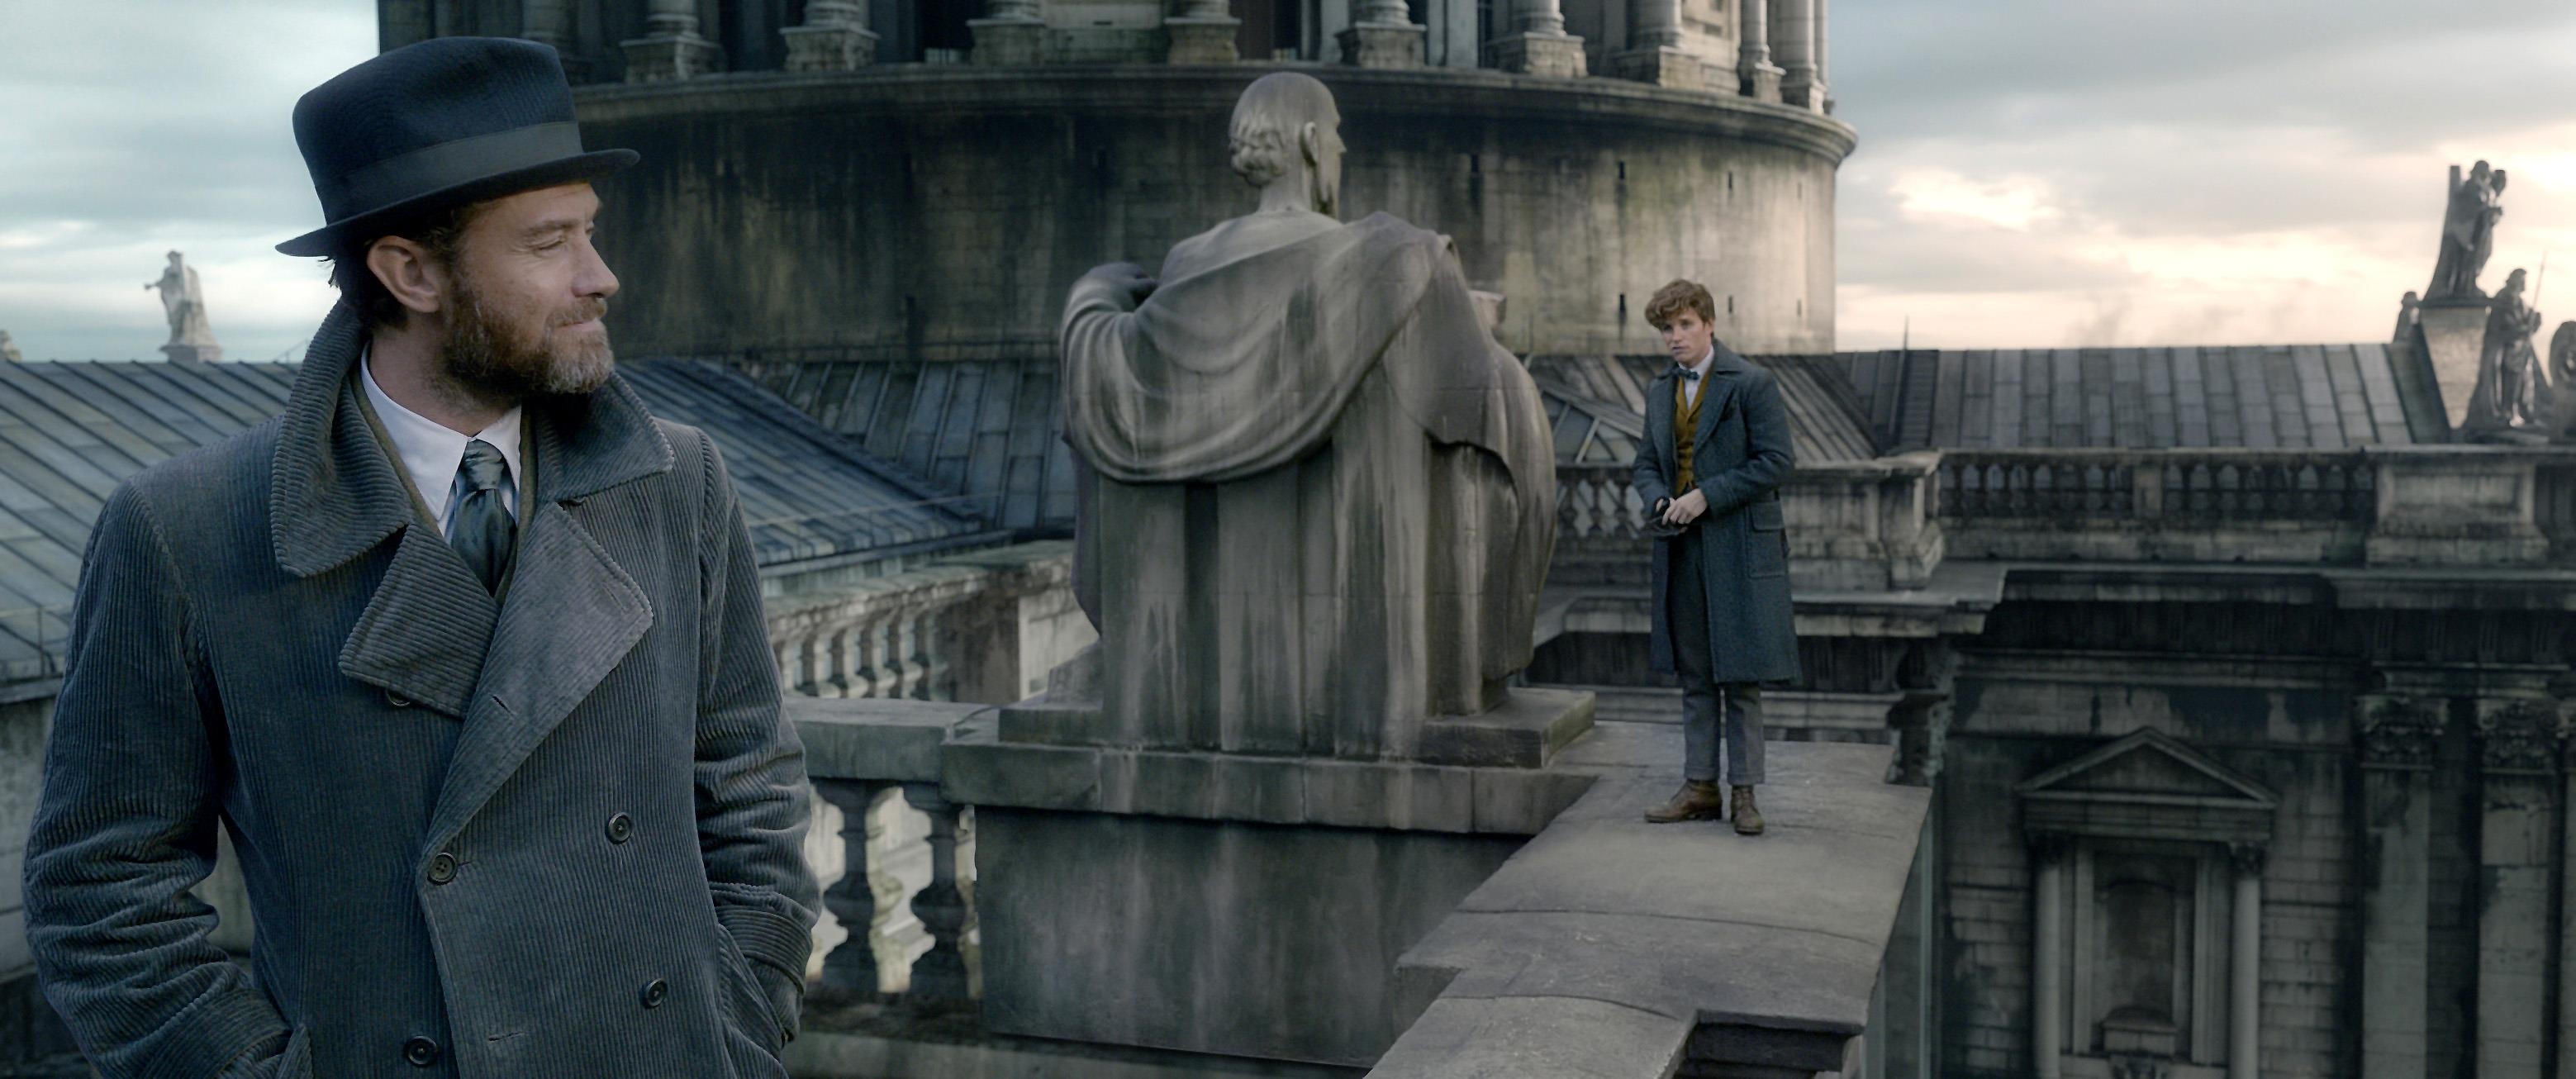 Image du film Les Animaux fantastiques : les crimes de Grindelwald c24693ff-e354-4191-acb8-8d6d2bf23792